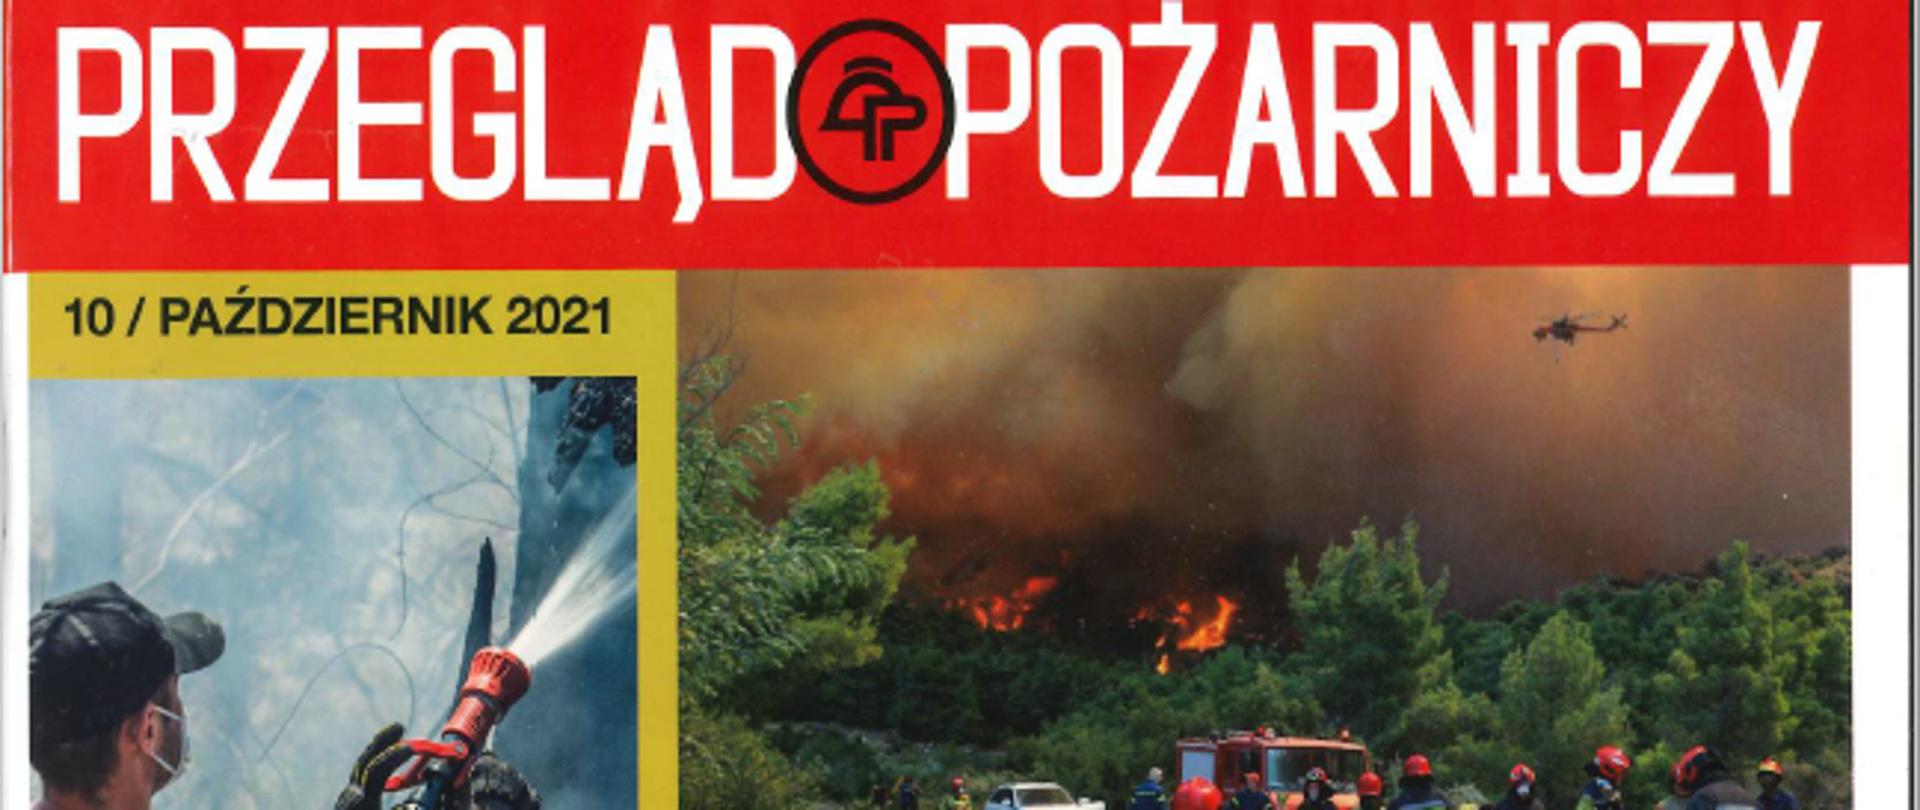 okładka miesięcznika przegląd pożarniczy na której widać kilka zdjęć z akcji ratowniczych pożary, zdjecie grupowe 